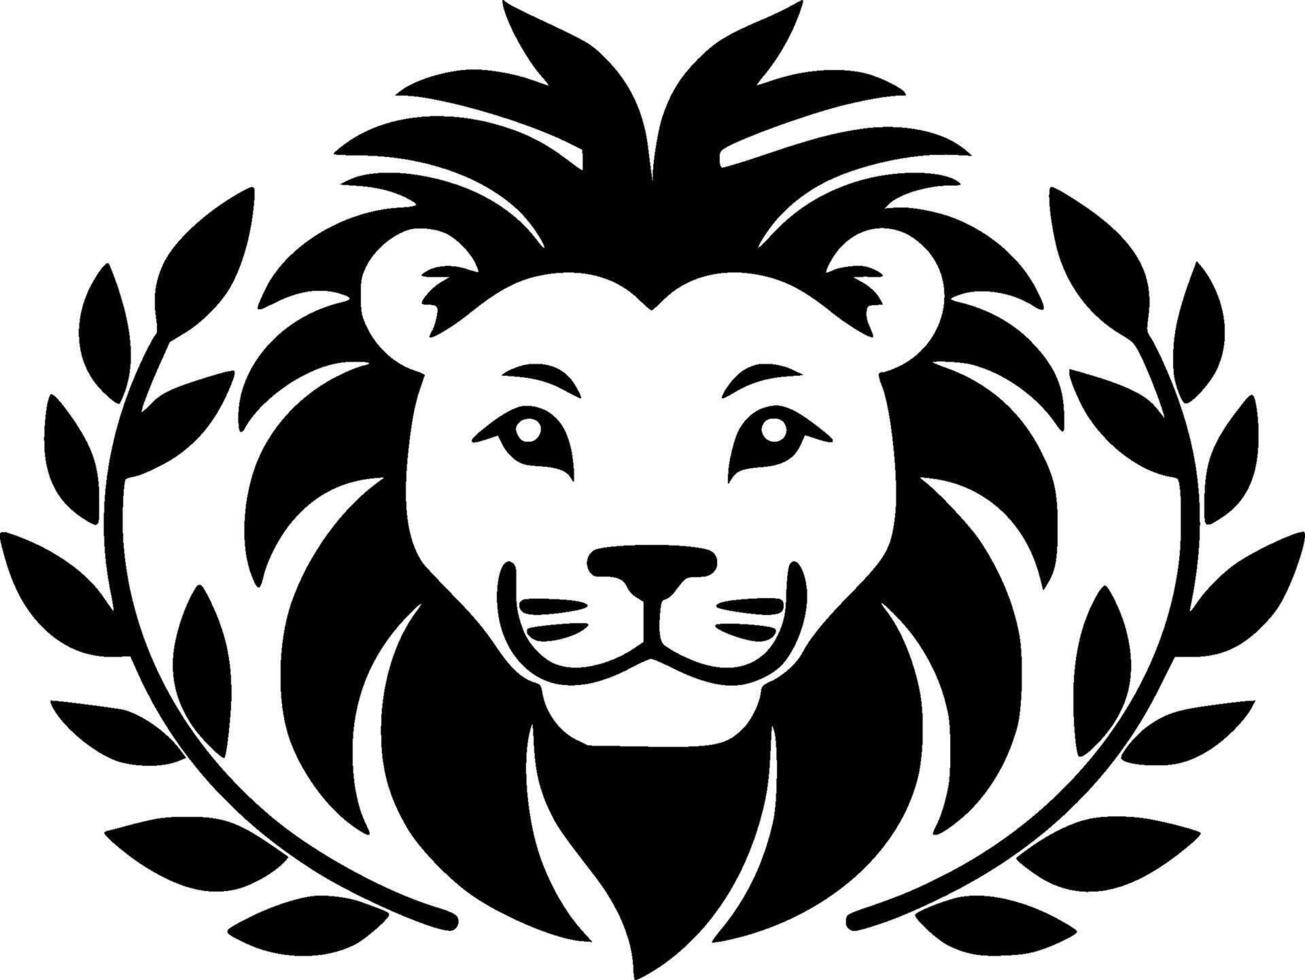 Lion bébé - haute qualité logo - illustration idéal pour T-shirt graphique vecteur